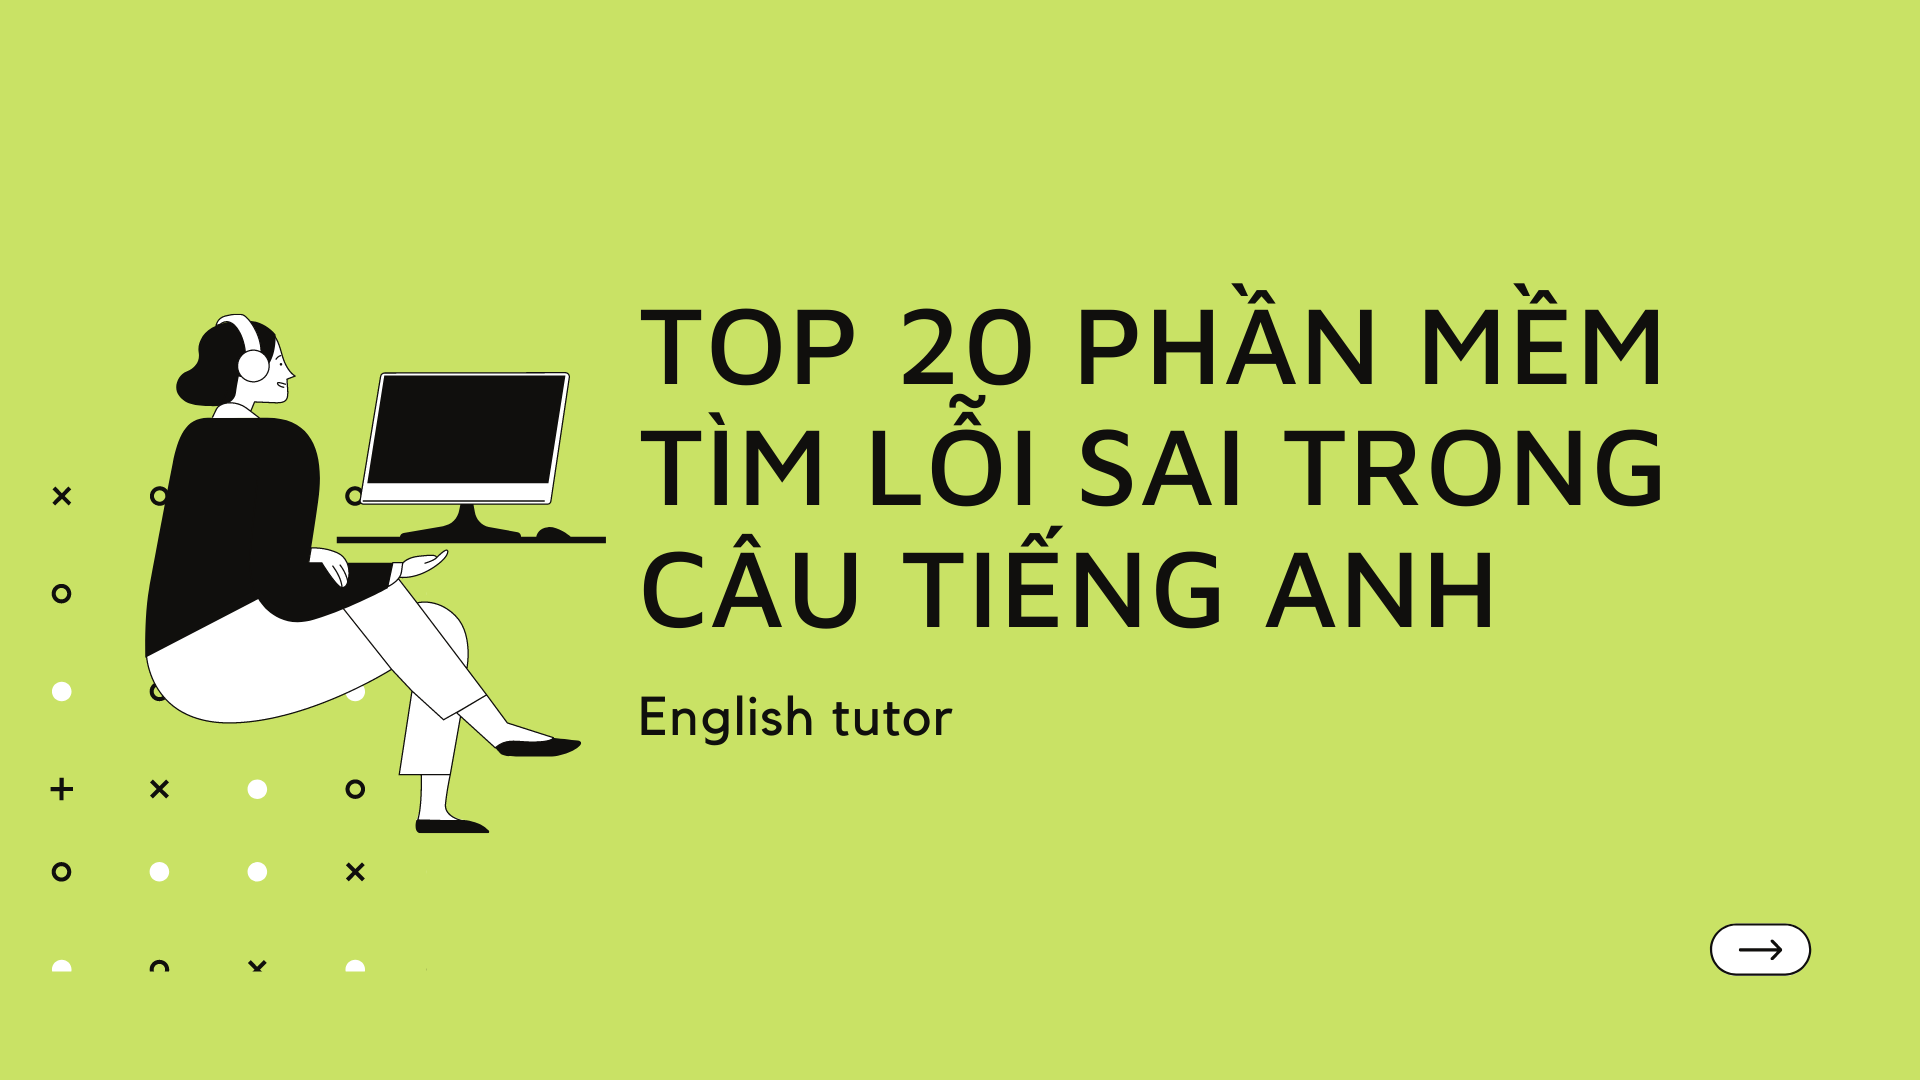 Top 20 phần mềm tìm lỗi sai trong câu tiếng Anh hiệu quả